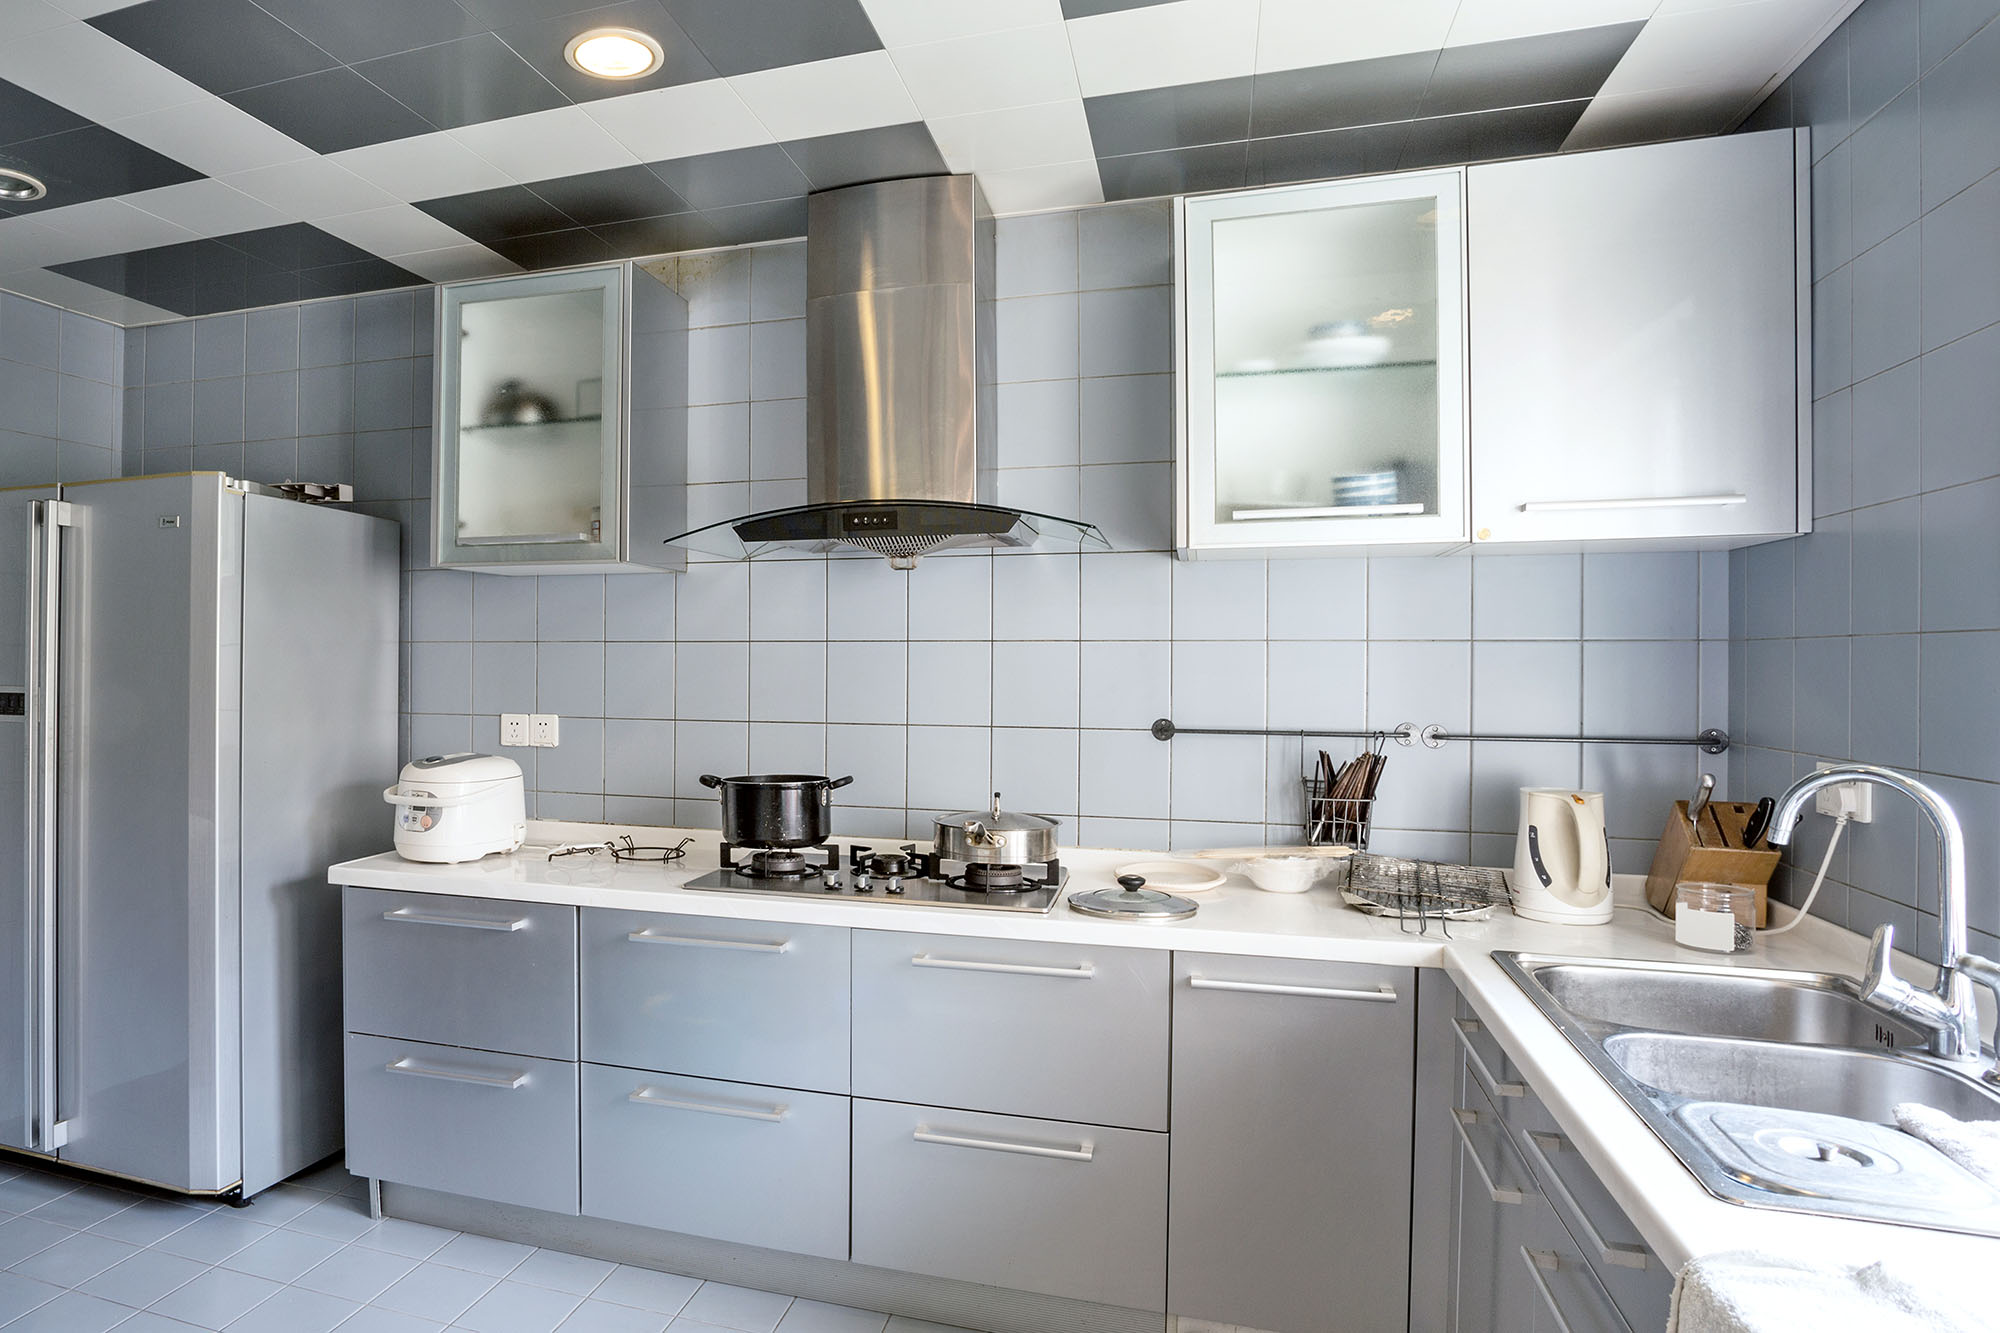 Grey Kitchens - Sharp and streamline kitchen design